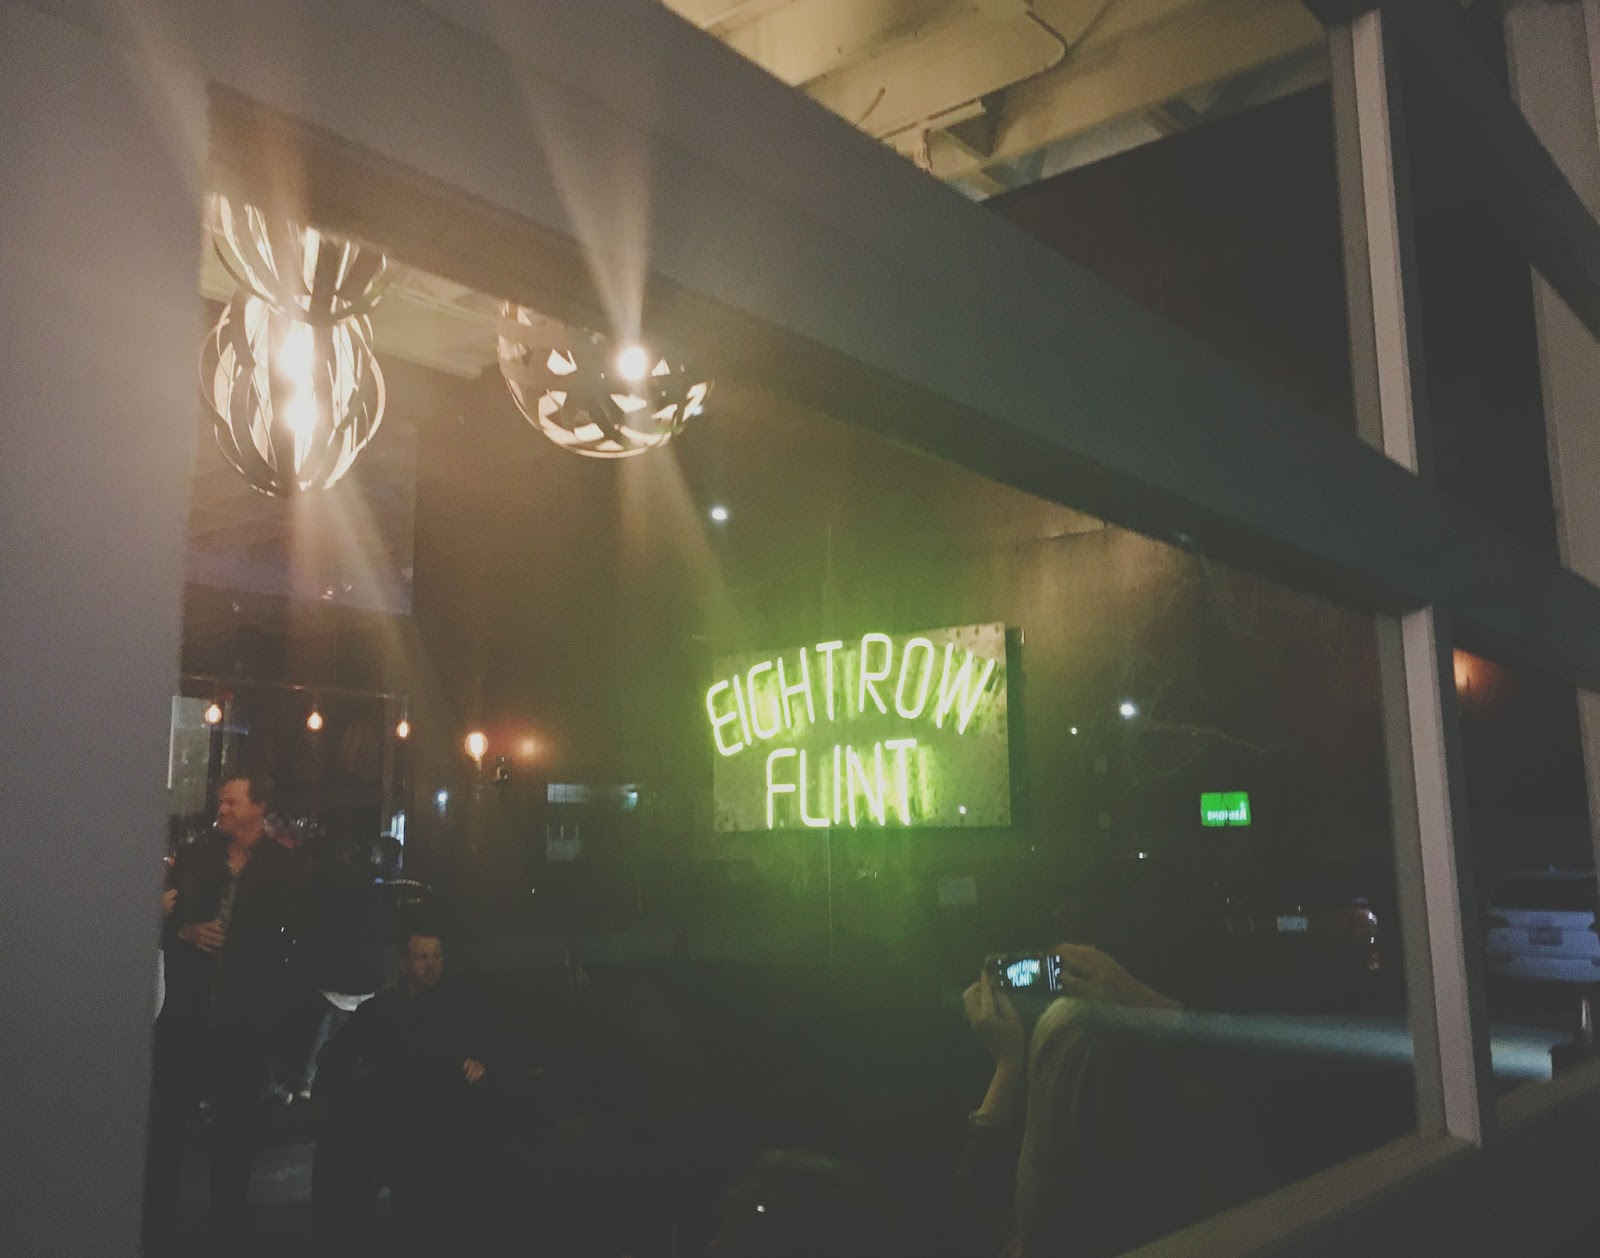 Eight Row Flint, a bar in Houston, Texas